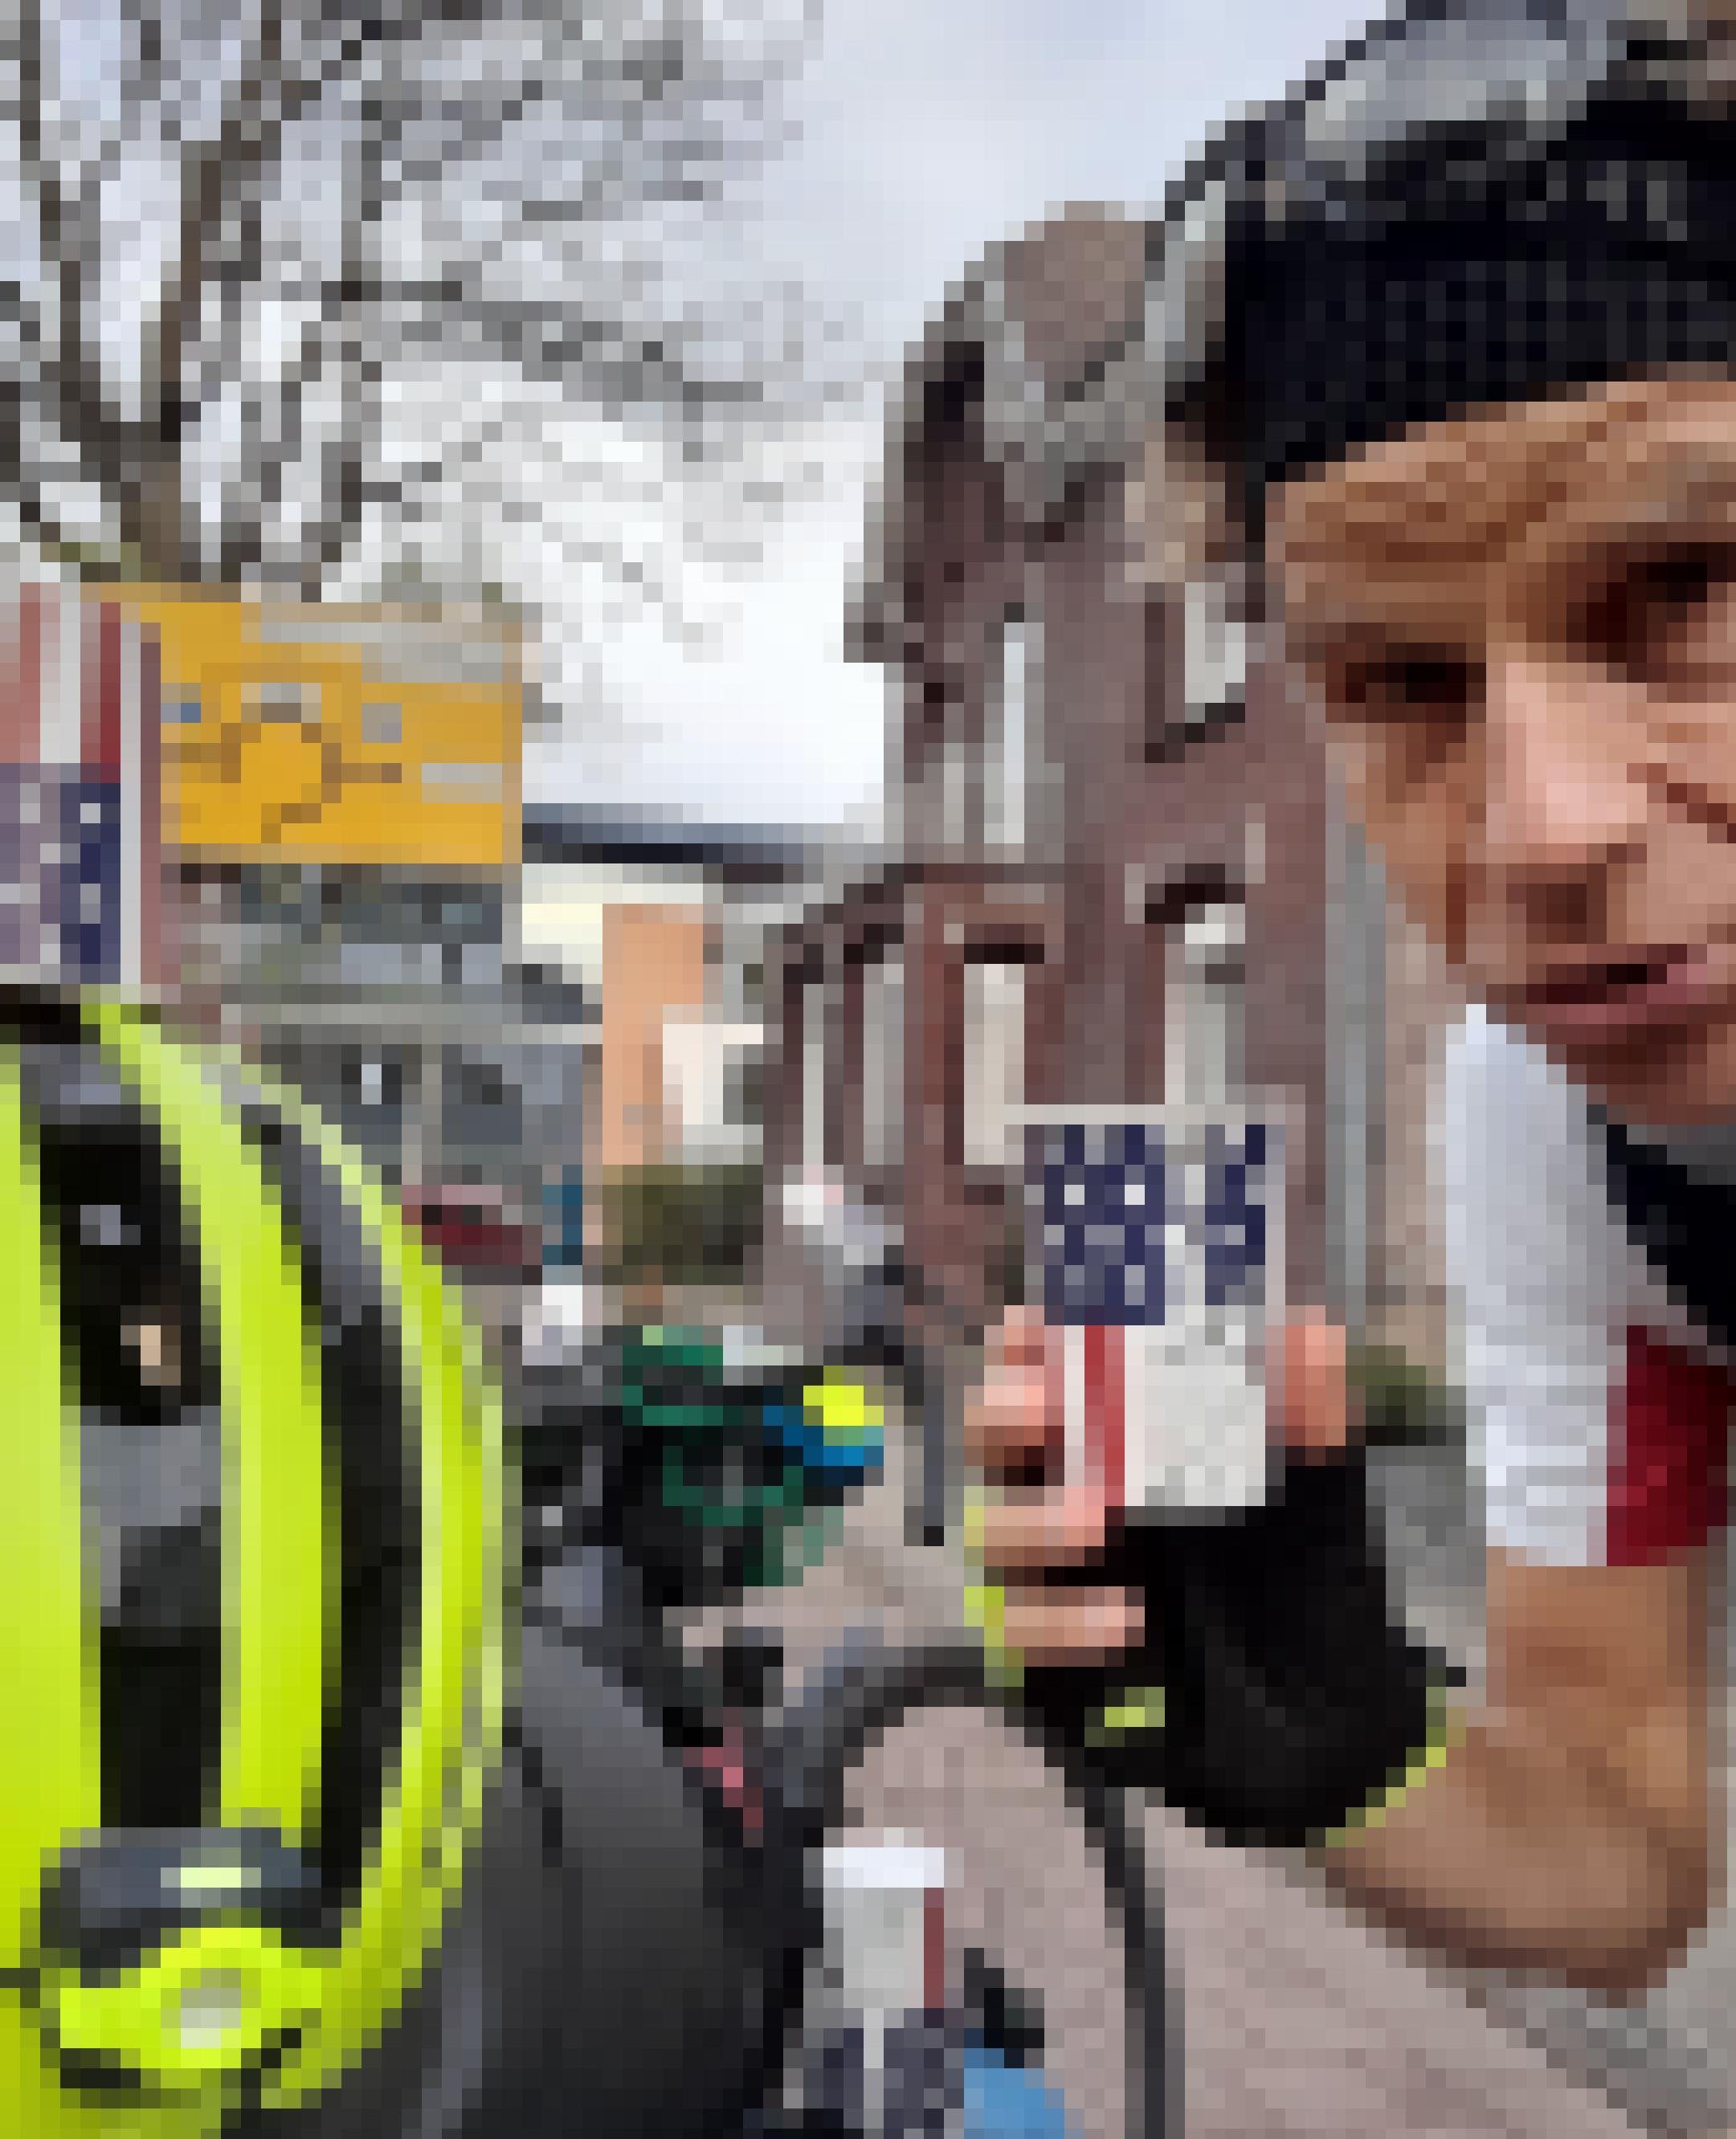 Am Ende einer niederländisch-deutschen Straße hält der Reporter einen Becher mit den Insignien der USA in der Hand, wie er ihn zu mehreren auch auf Radhelm und Rennrad drapiert hat.